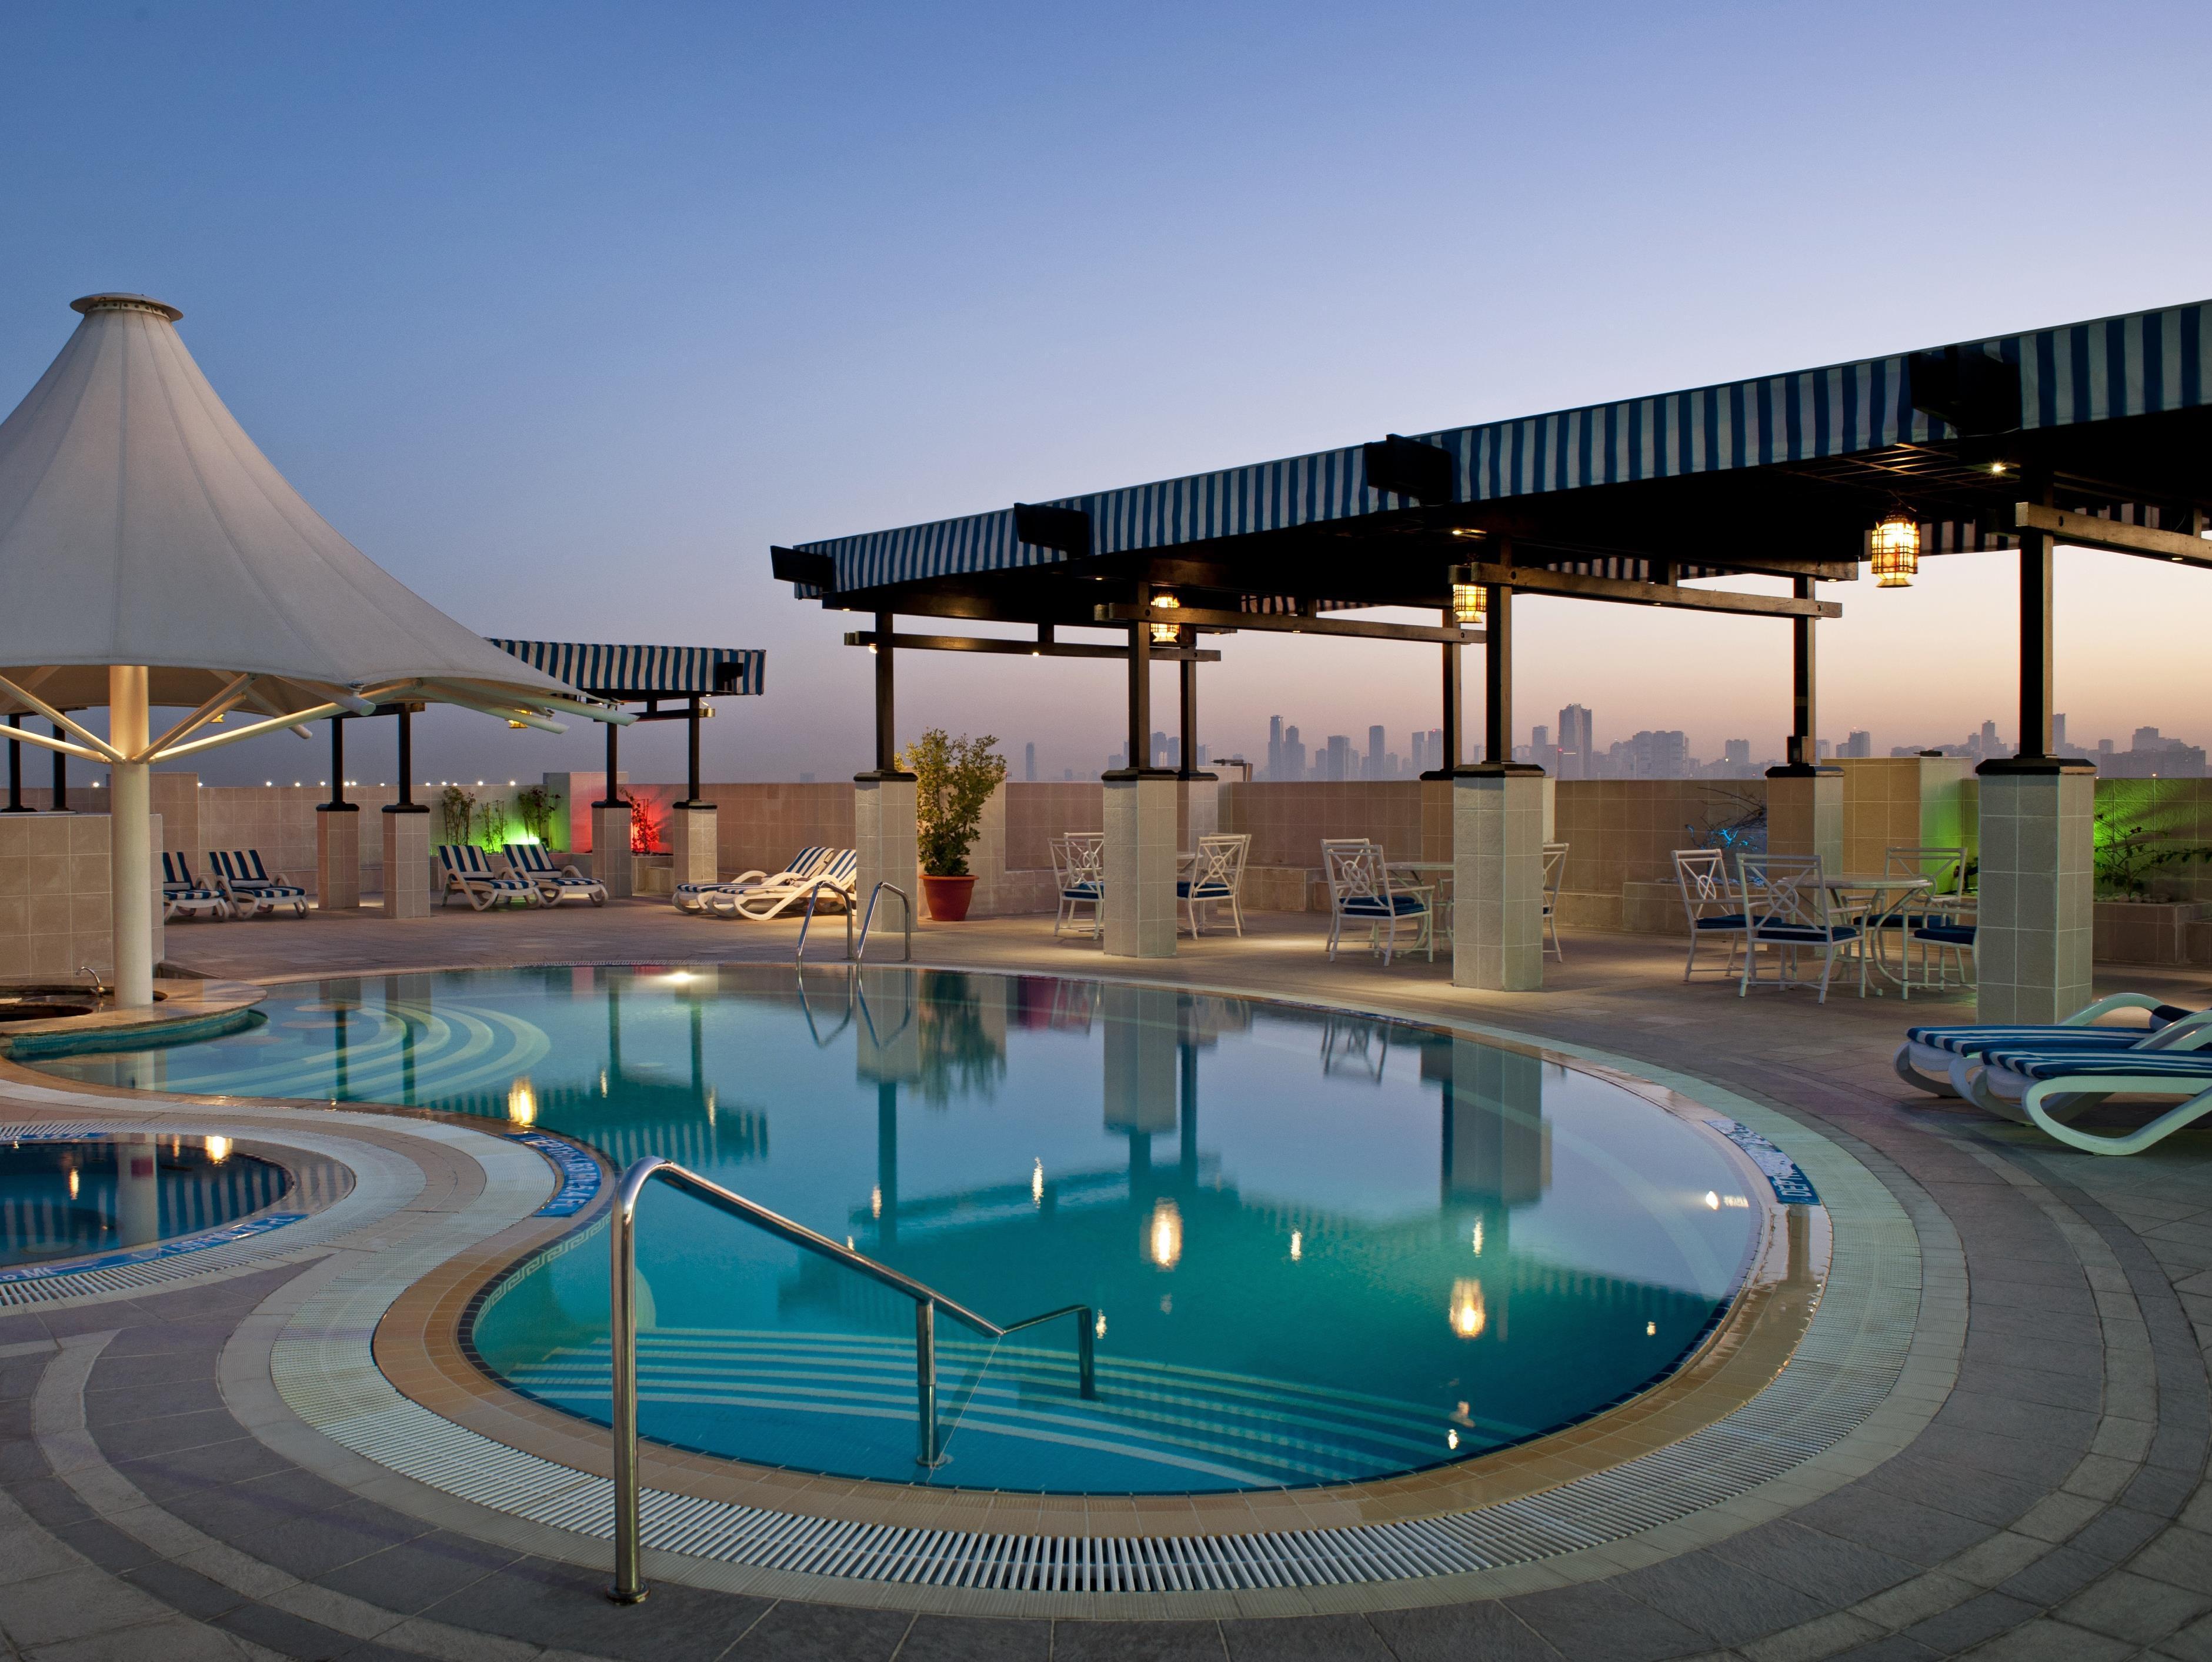 Grand Excelsior Hotel Deira Dubai Exterior photo